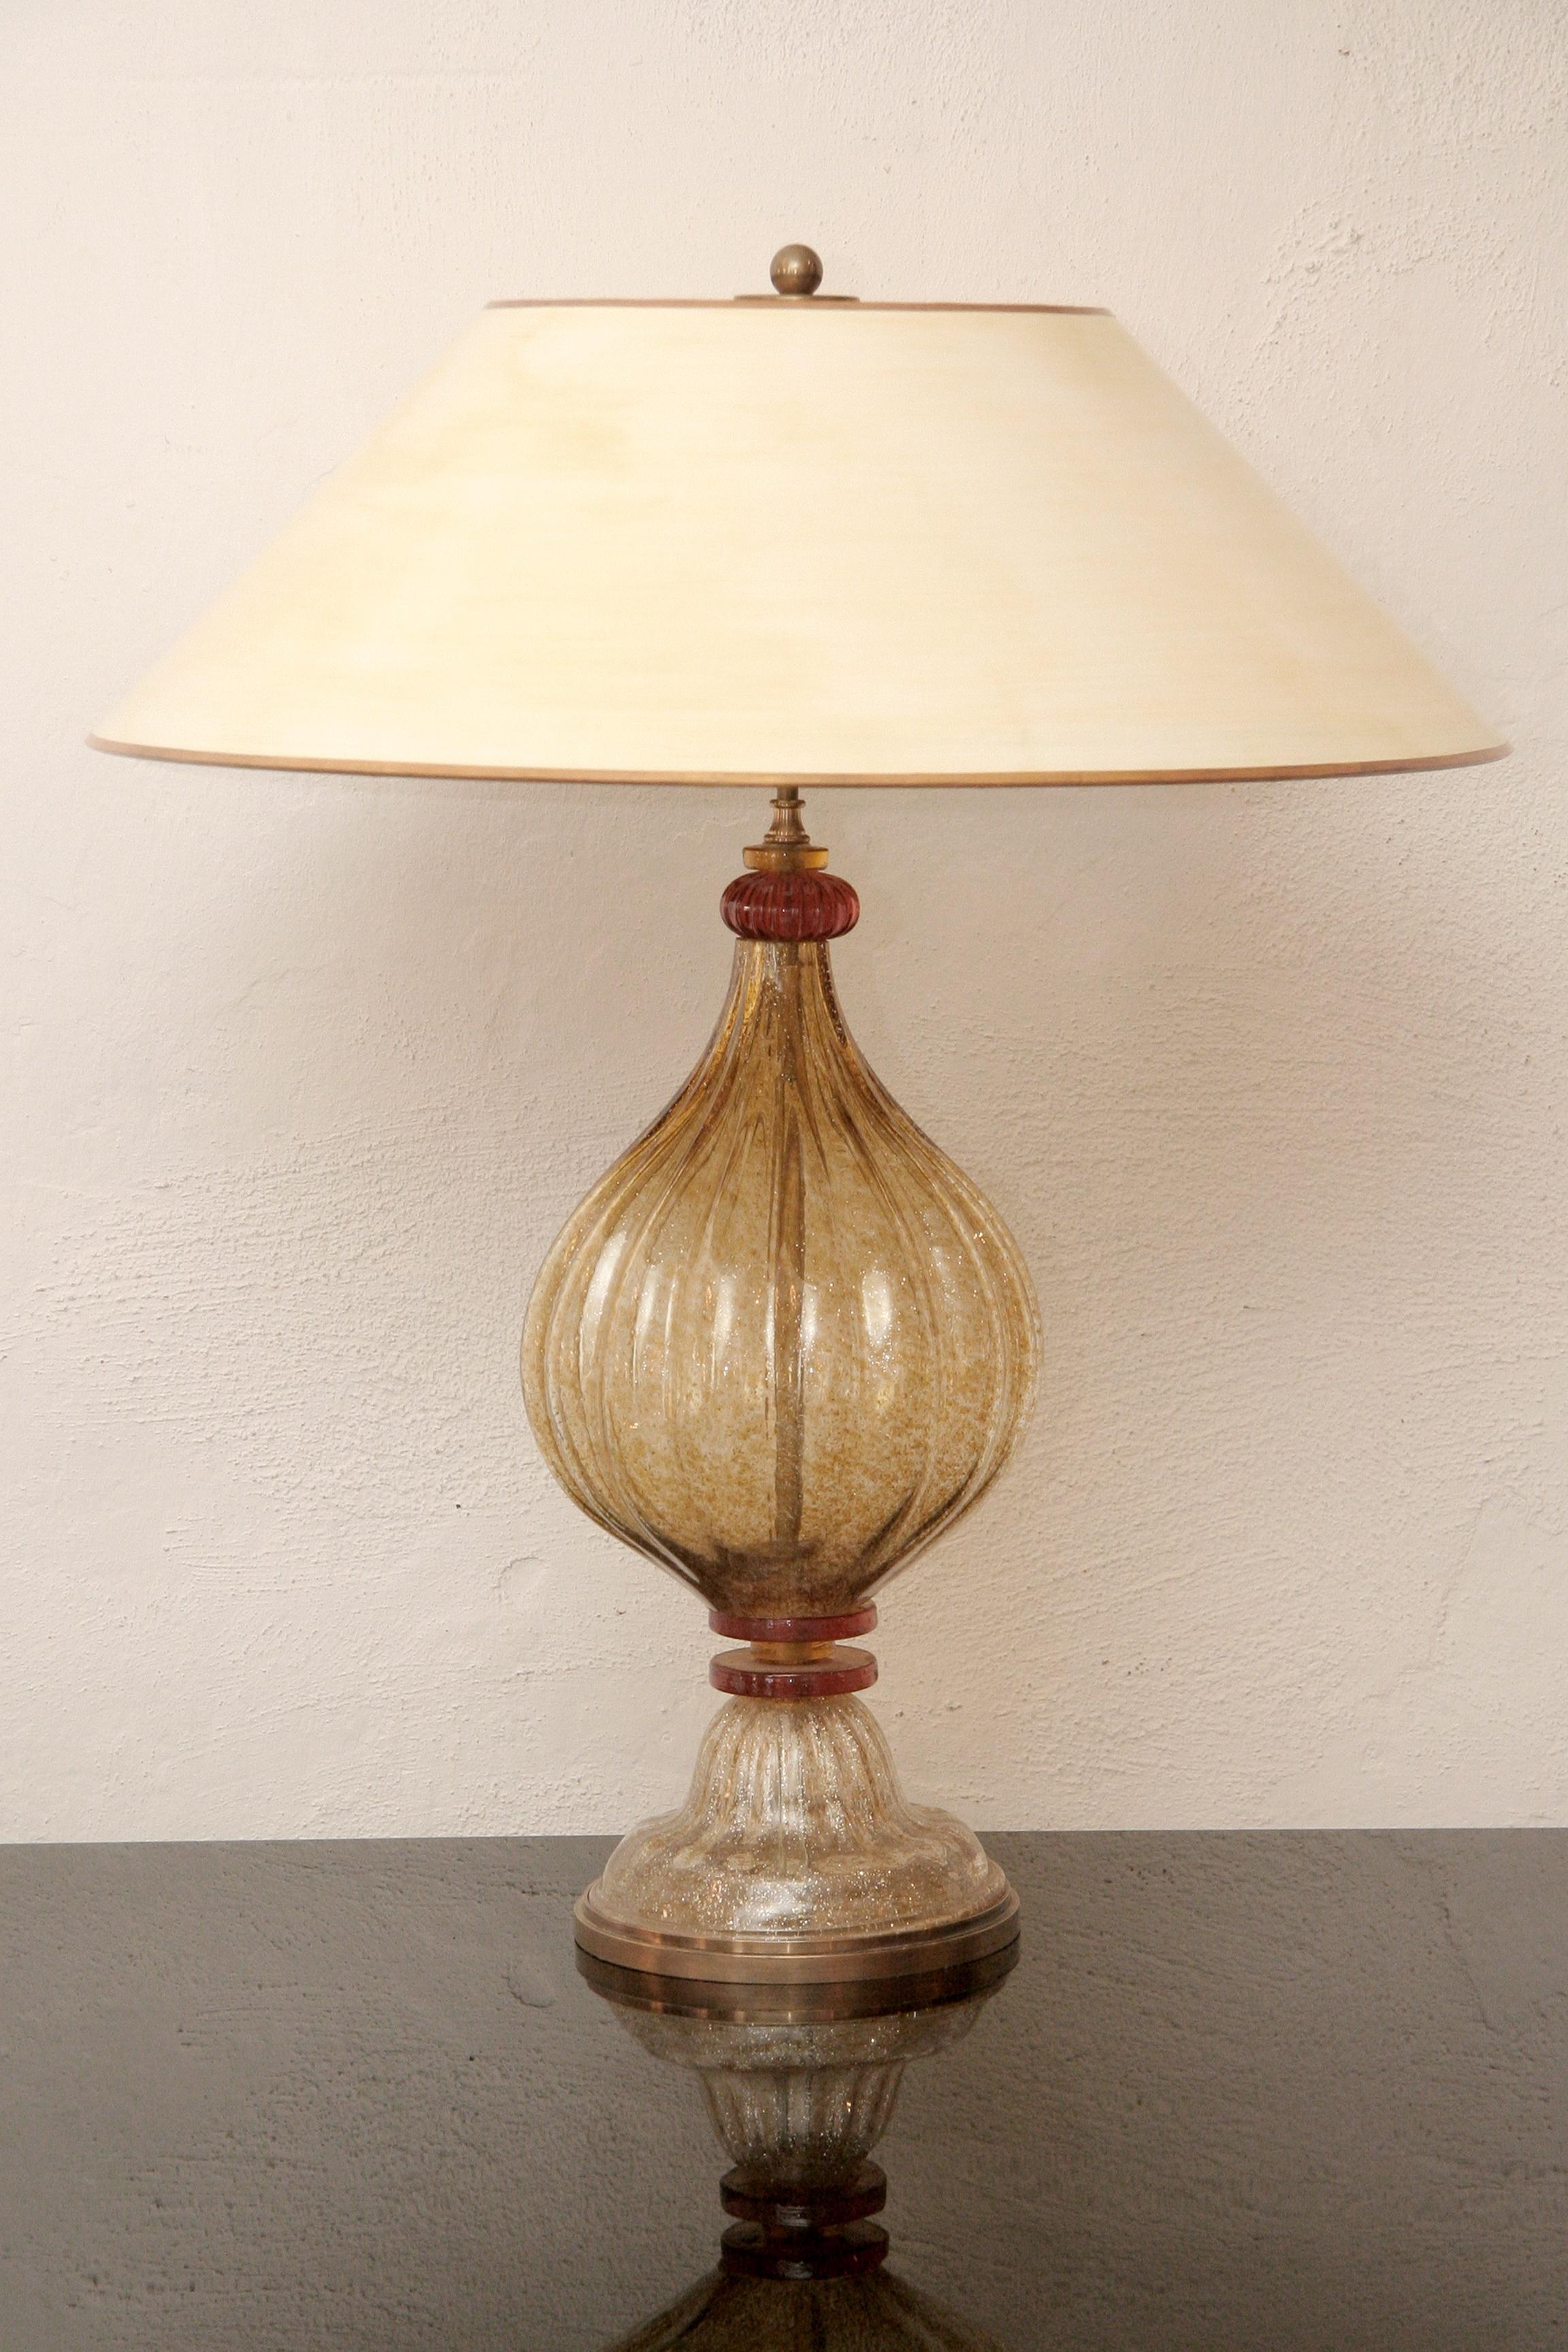 Lampe de table italienne en verre de Murano des années 1970
Verre or et orange - abat-jour de couleur beige
Le milieu de la tige et le pied sont nervurés.
Le pied repose sur une base en laiton patiné, la construction de la lampe est également en